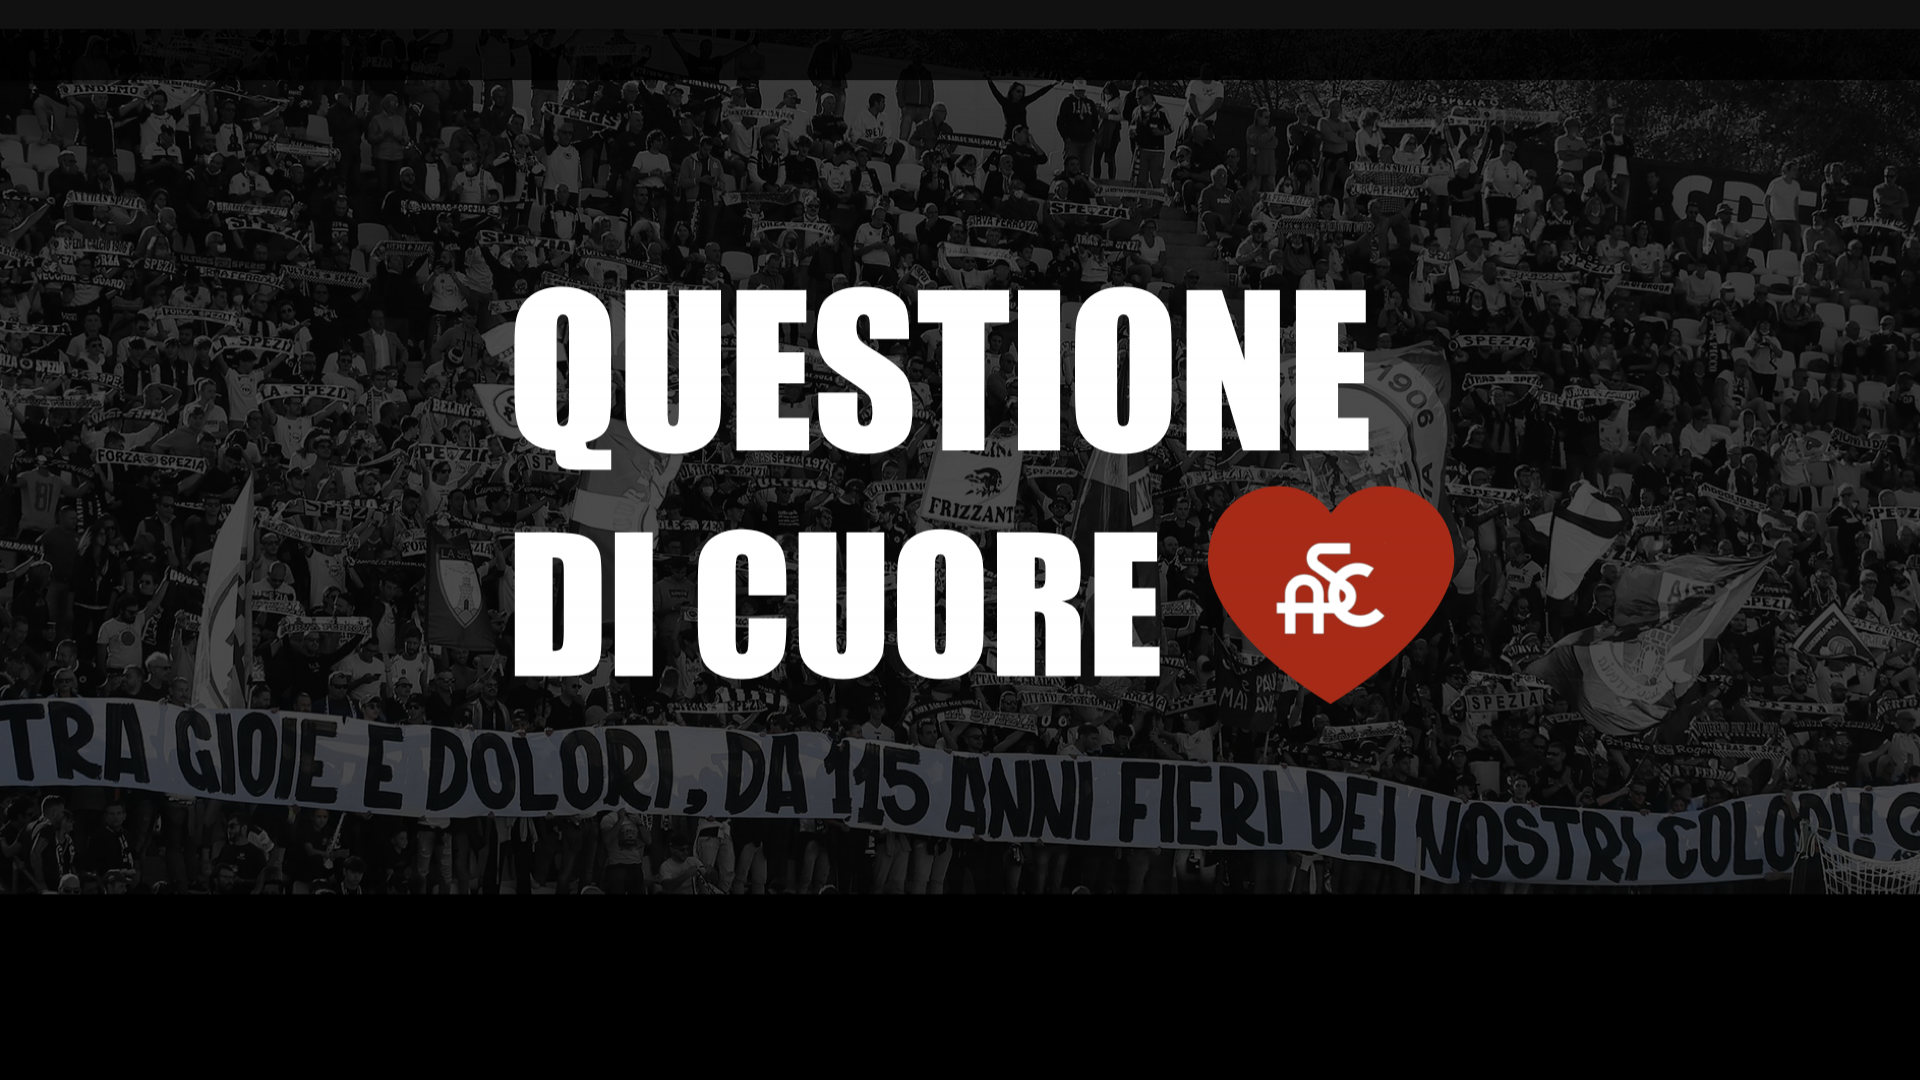 Spezia-Fiorentina: prelazione e tagliandi scontati da mercoledì 2 a lunedì 7 febbraio